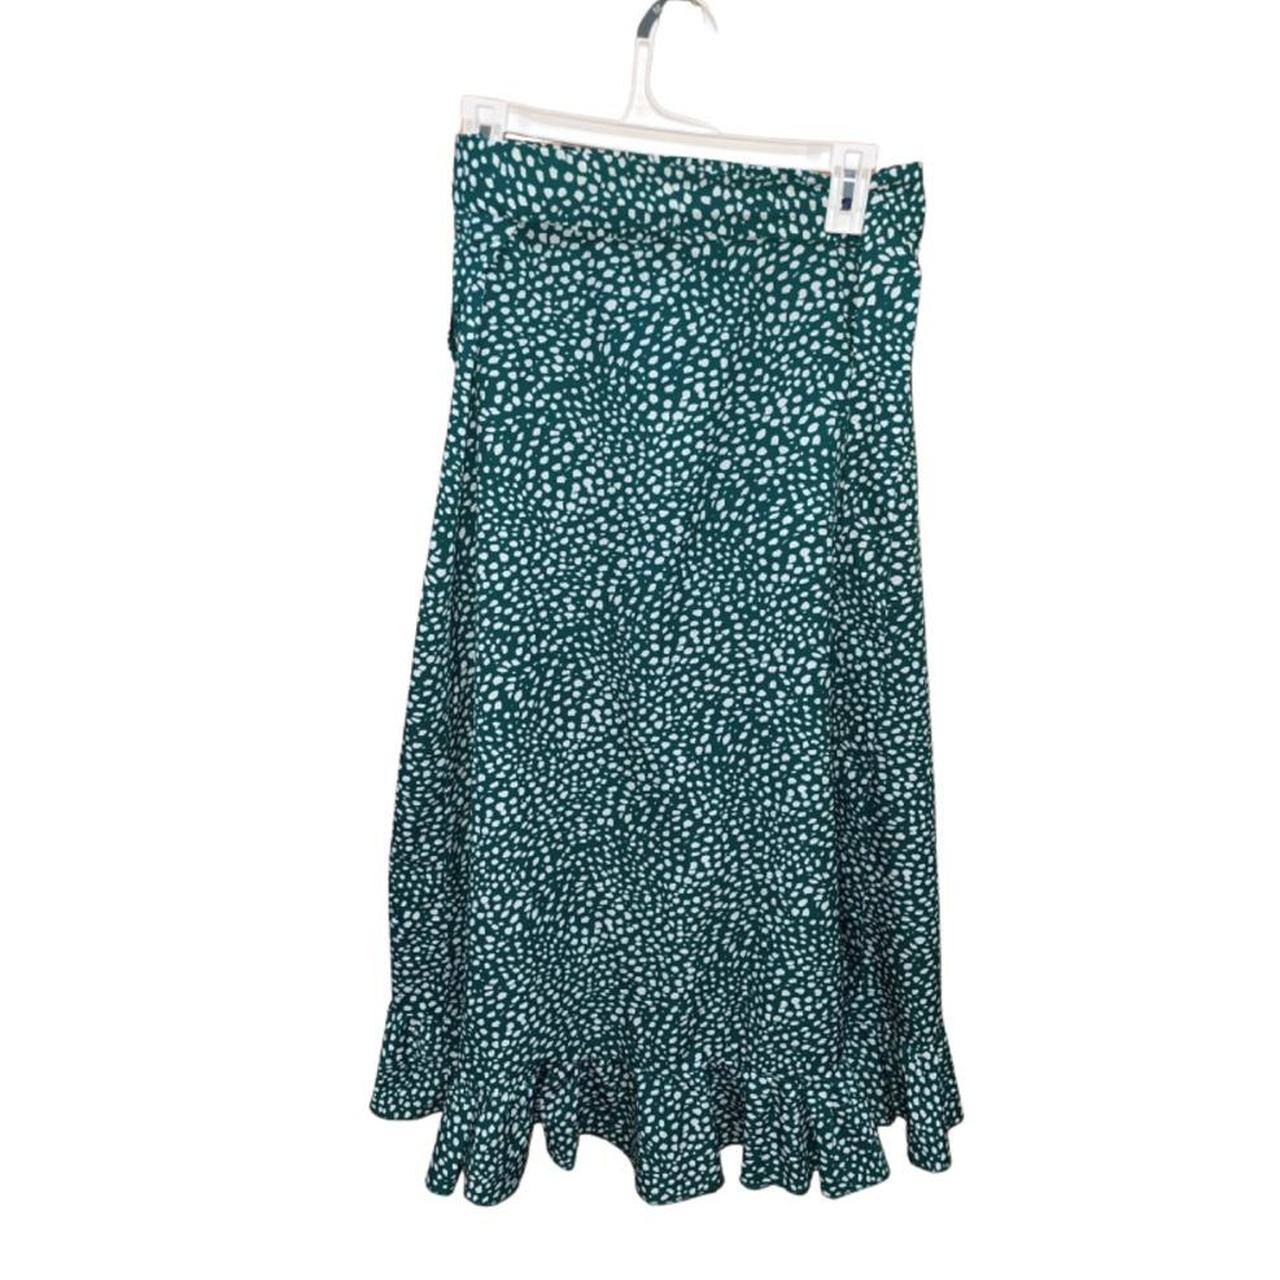 SHEIN Women's Green Skirt (2)